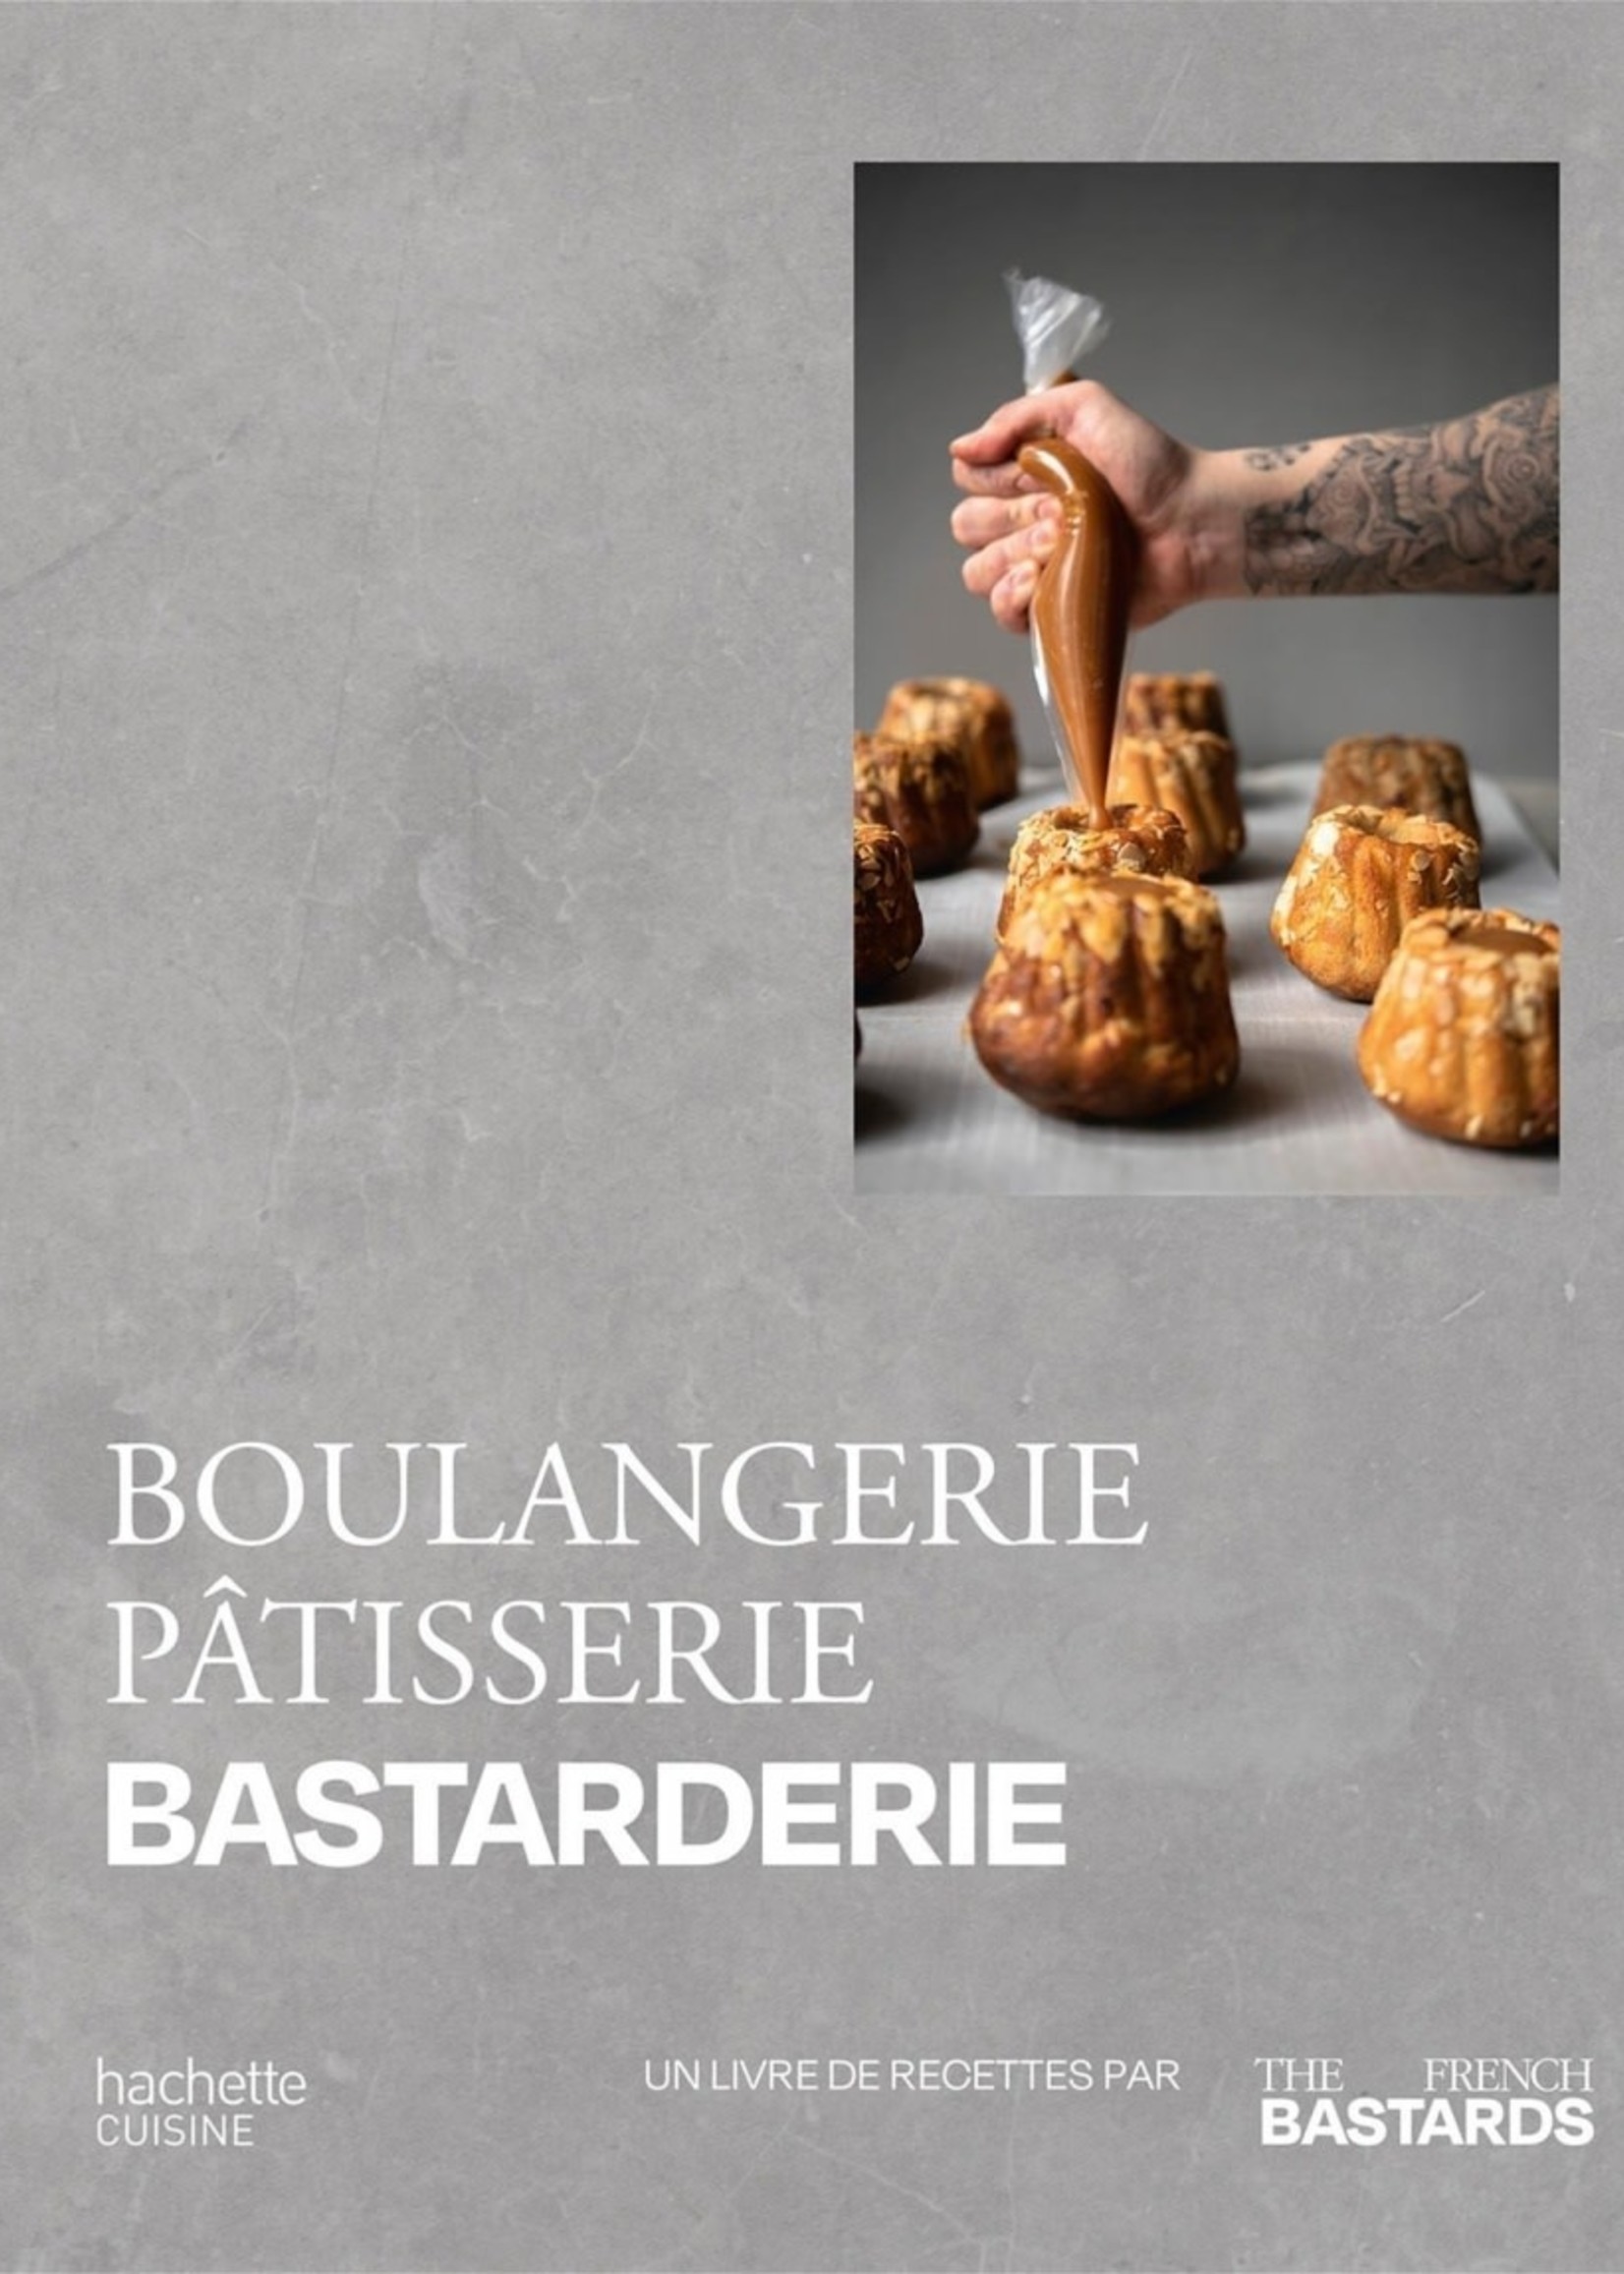 Hachette Boulangerie, pâtisserie, bastarderie - The French bastards, Francois Daubinet